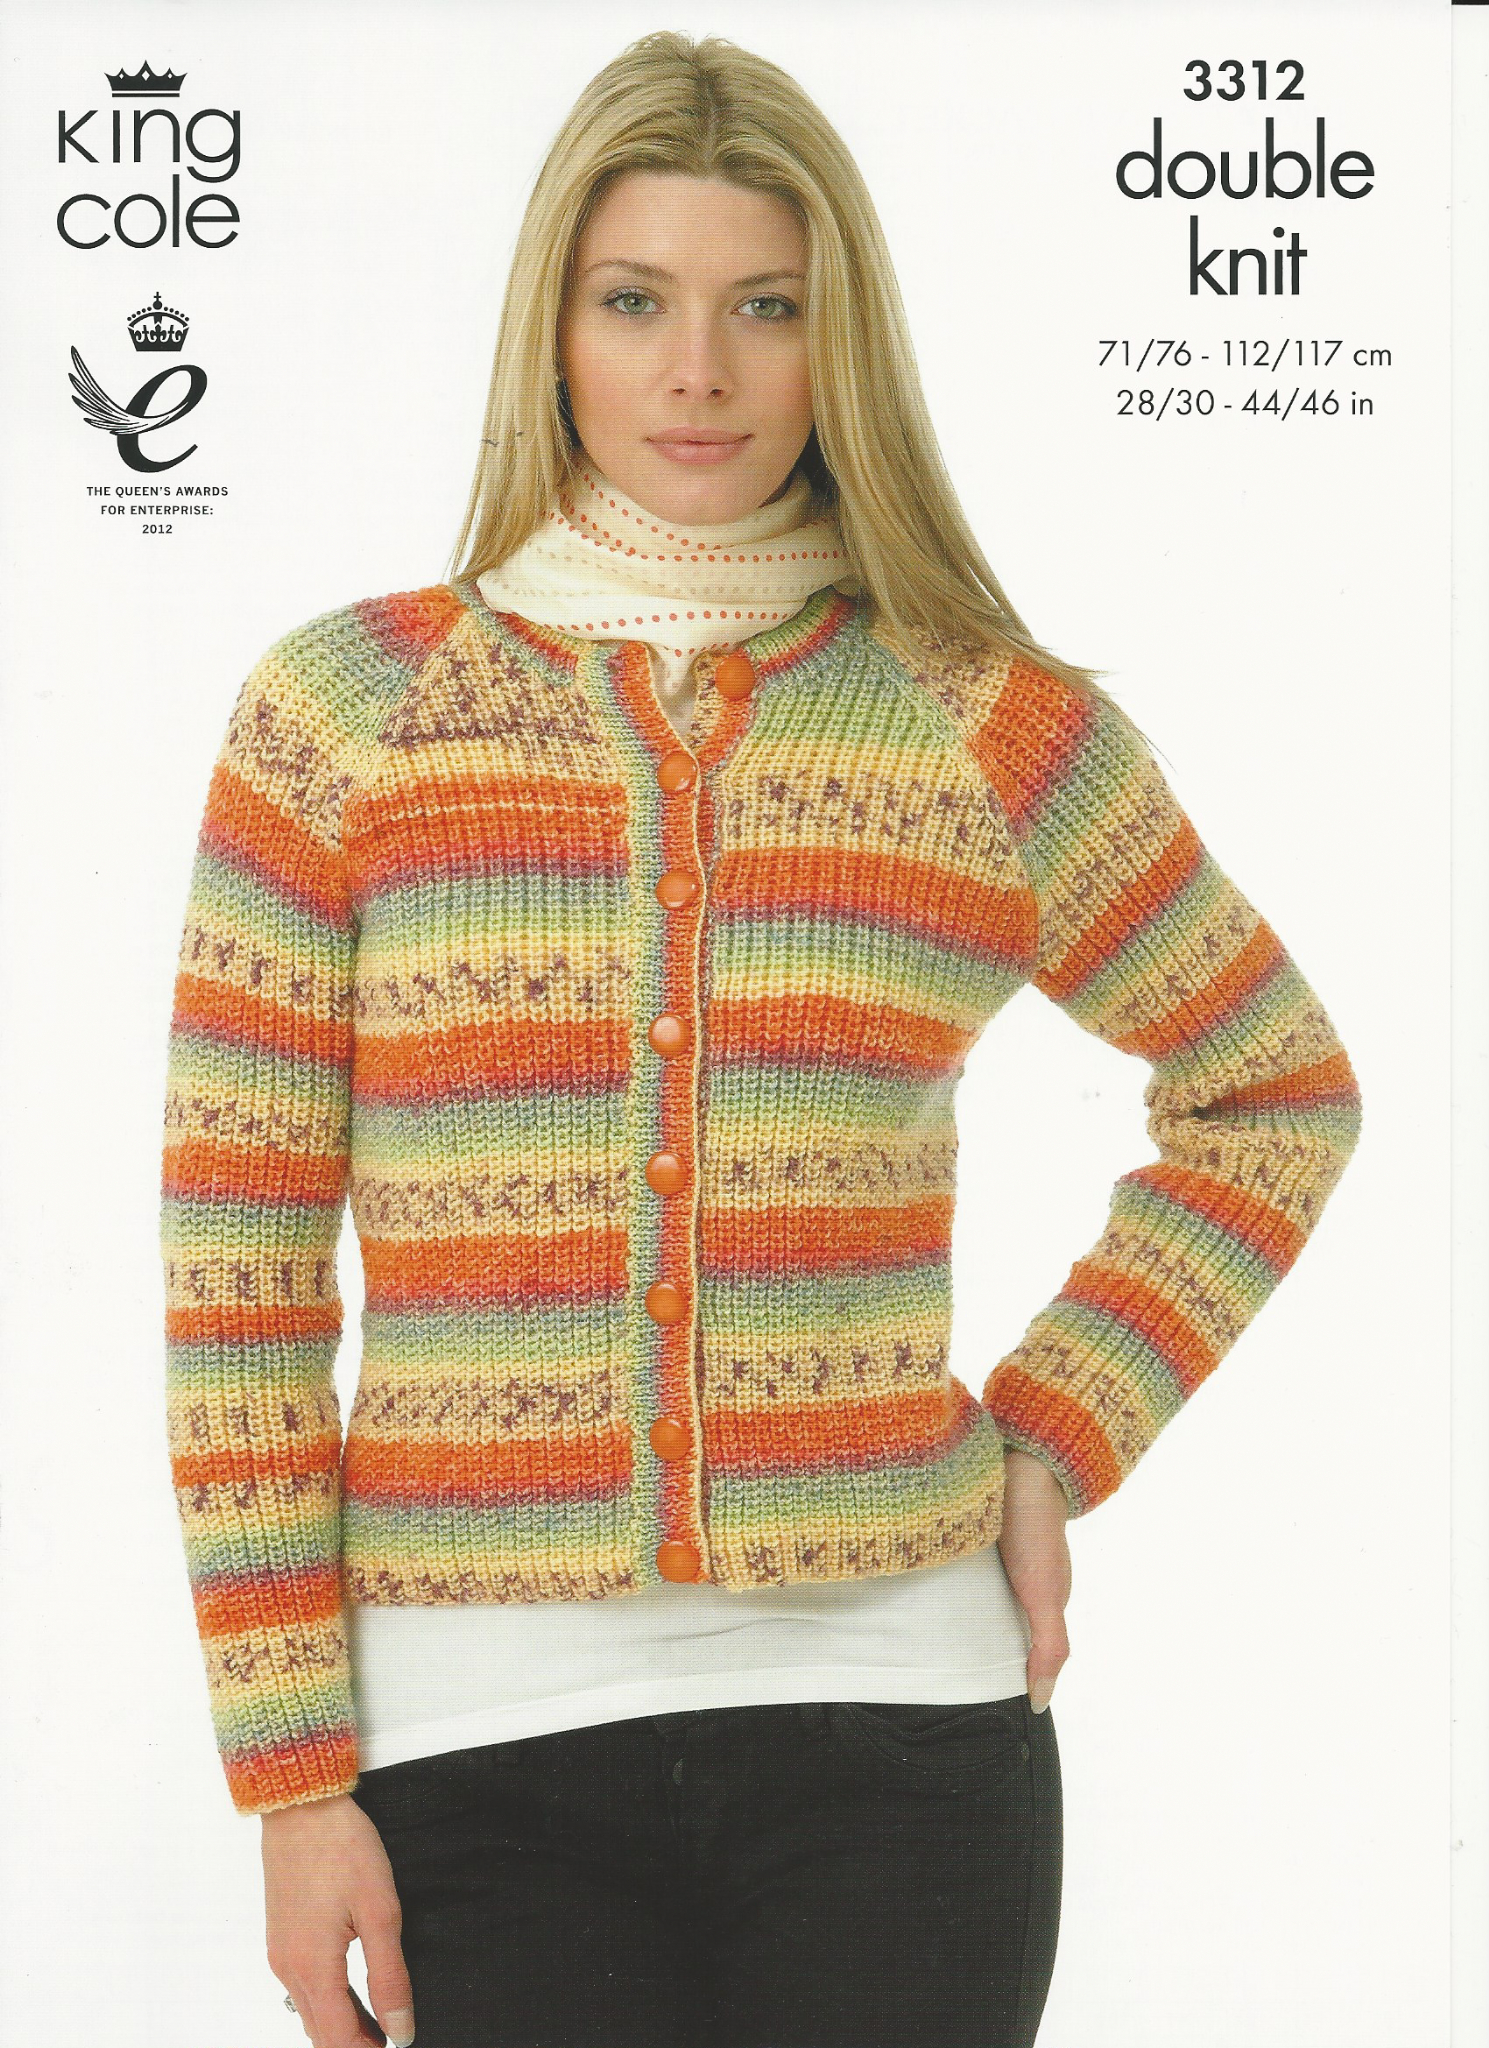 Sweater Jacket Knitting Pattern King Cole Ladies Sweater Jacket Knitting Pattern In Splash Dk 3312